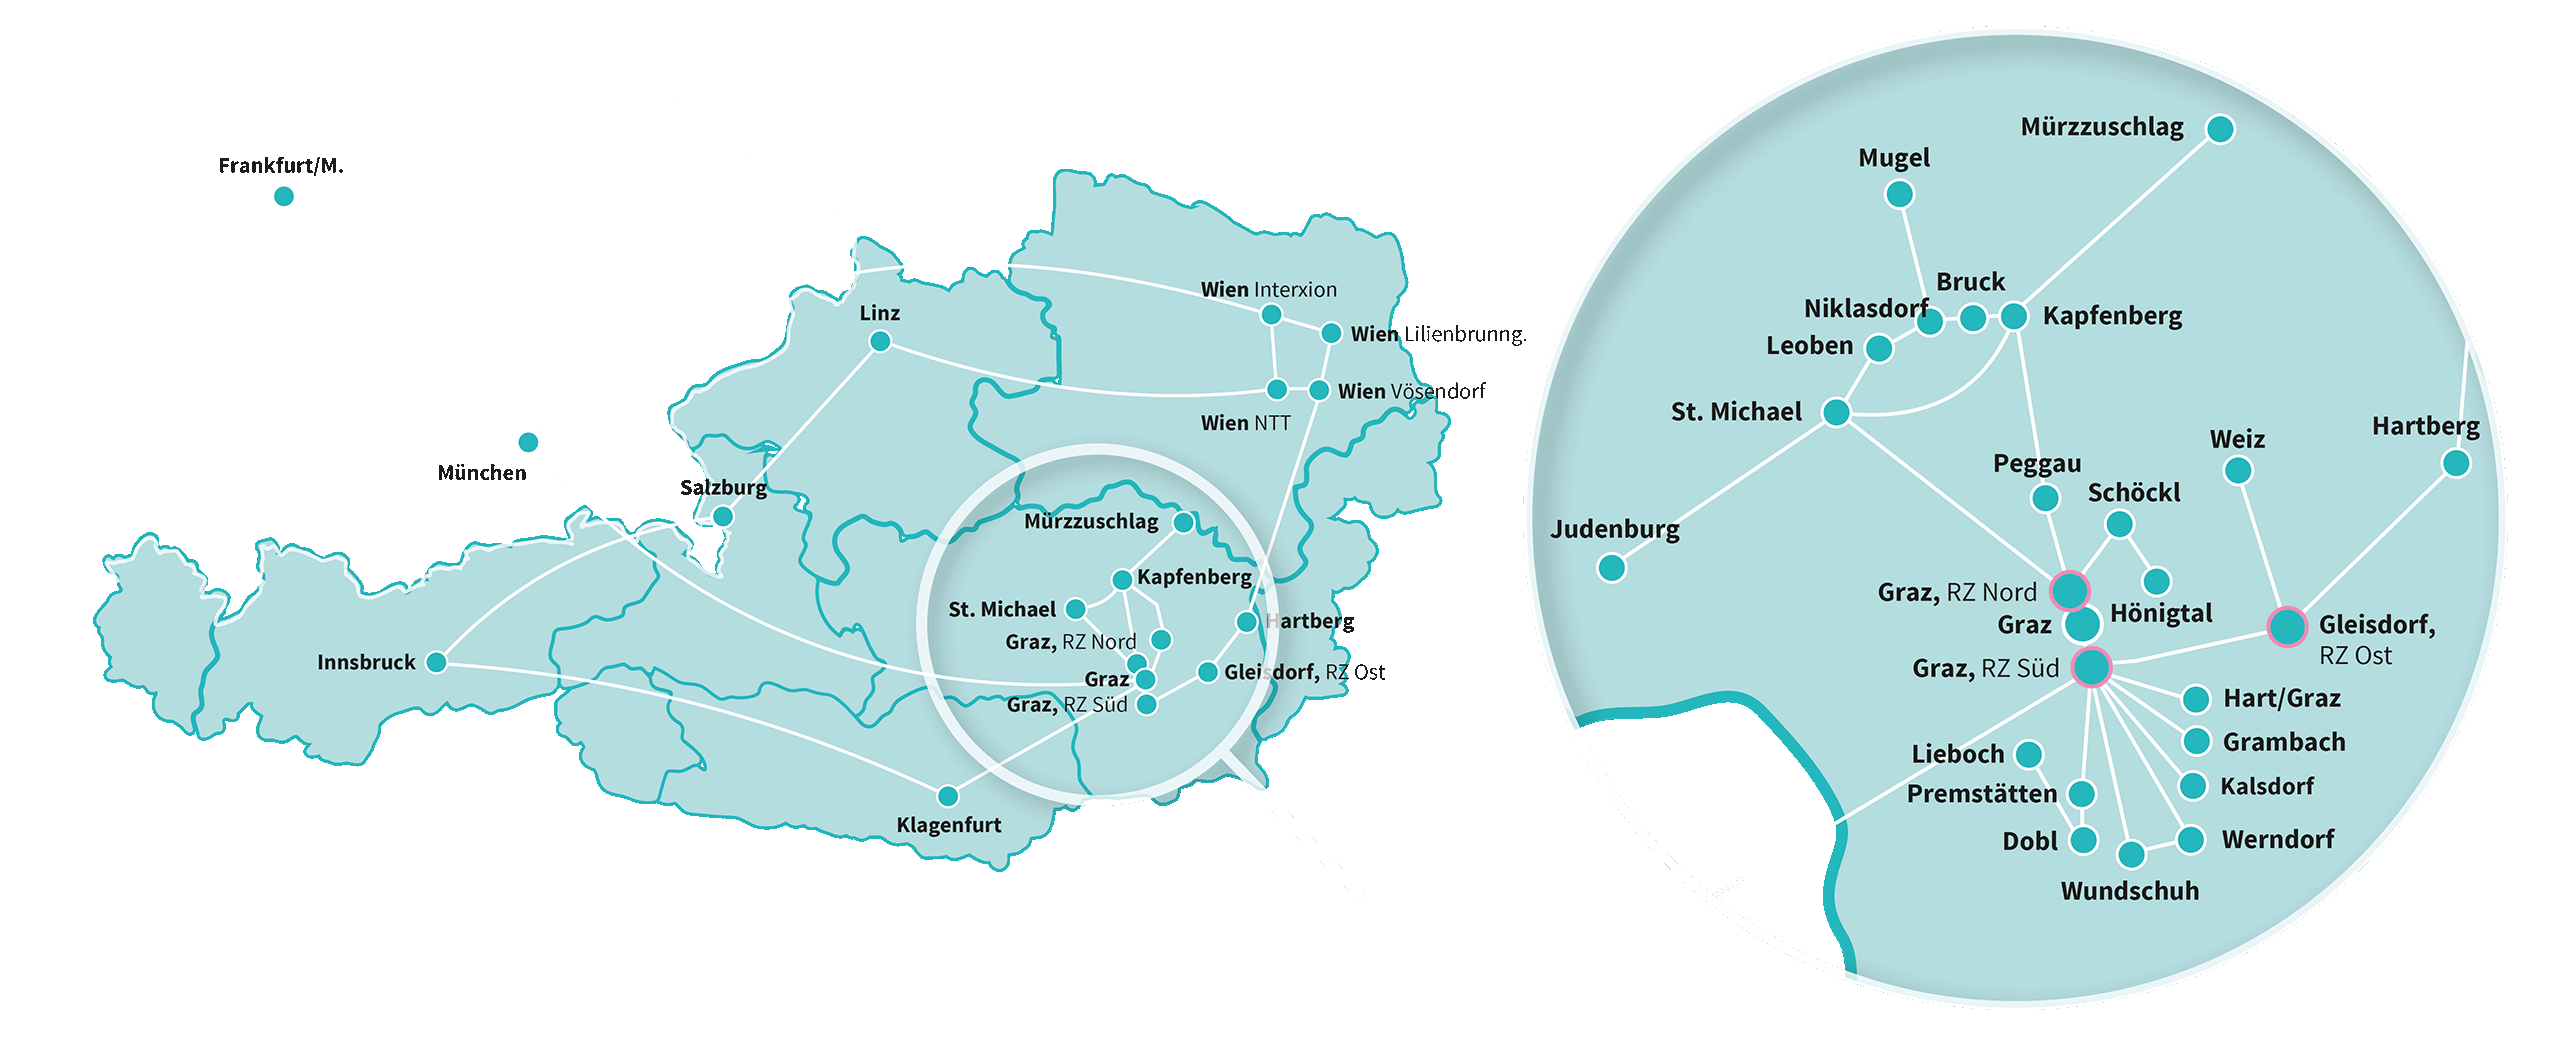 Citycom Karte von Österreich, in der die Steiermark hervorgehoben ist